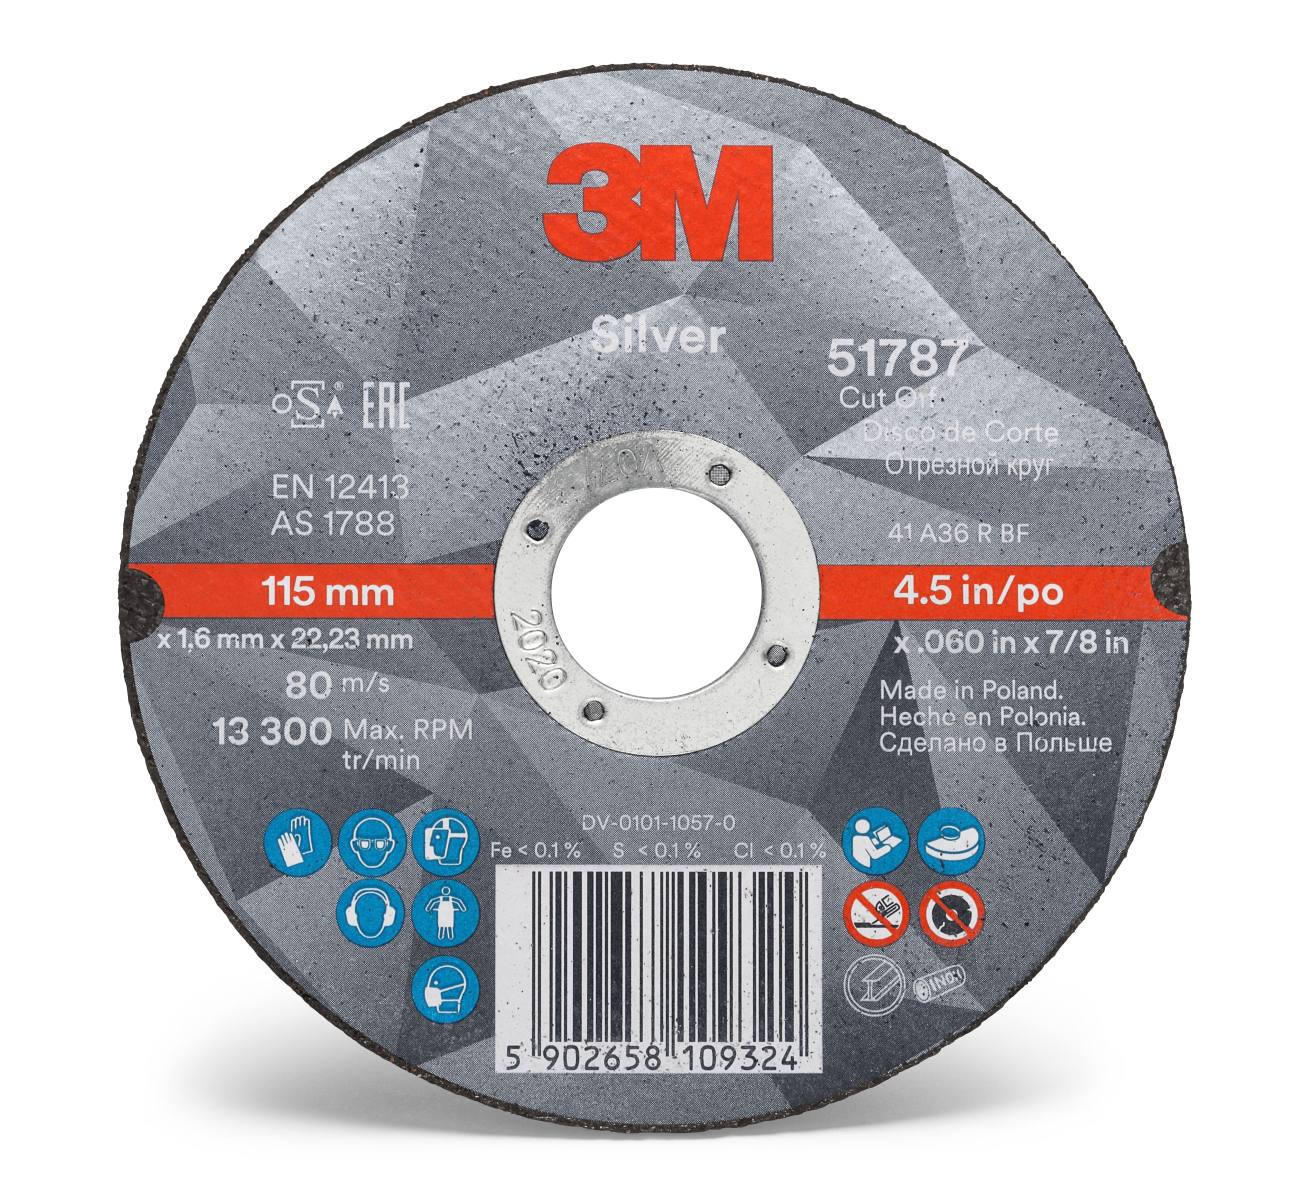 3M Silver Cut-Off Wheel cutting-off wheel, 75 mm, 1.6 mm, 10 mm, T41, 51769